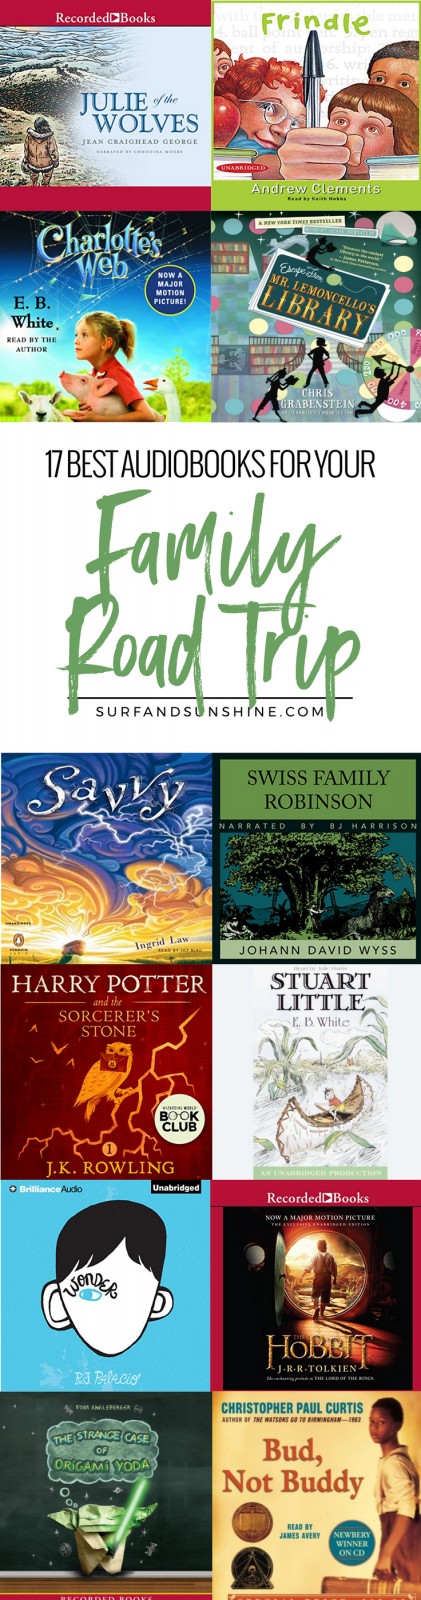 best audiobooks for family road trips